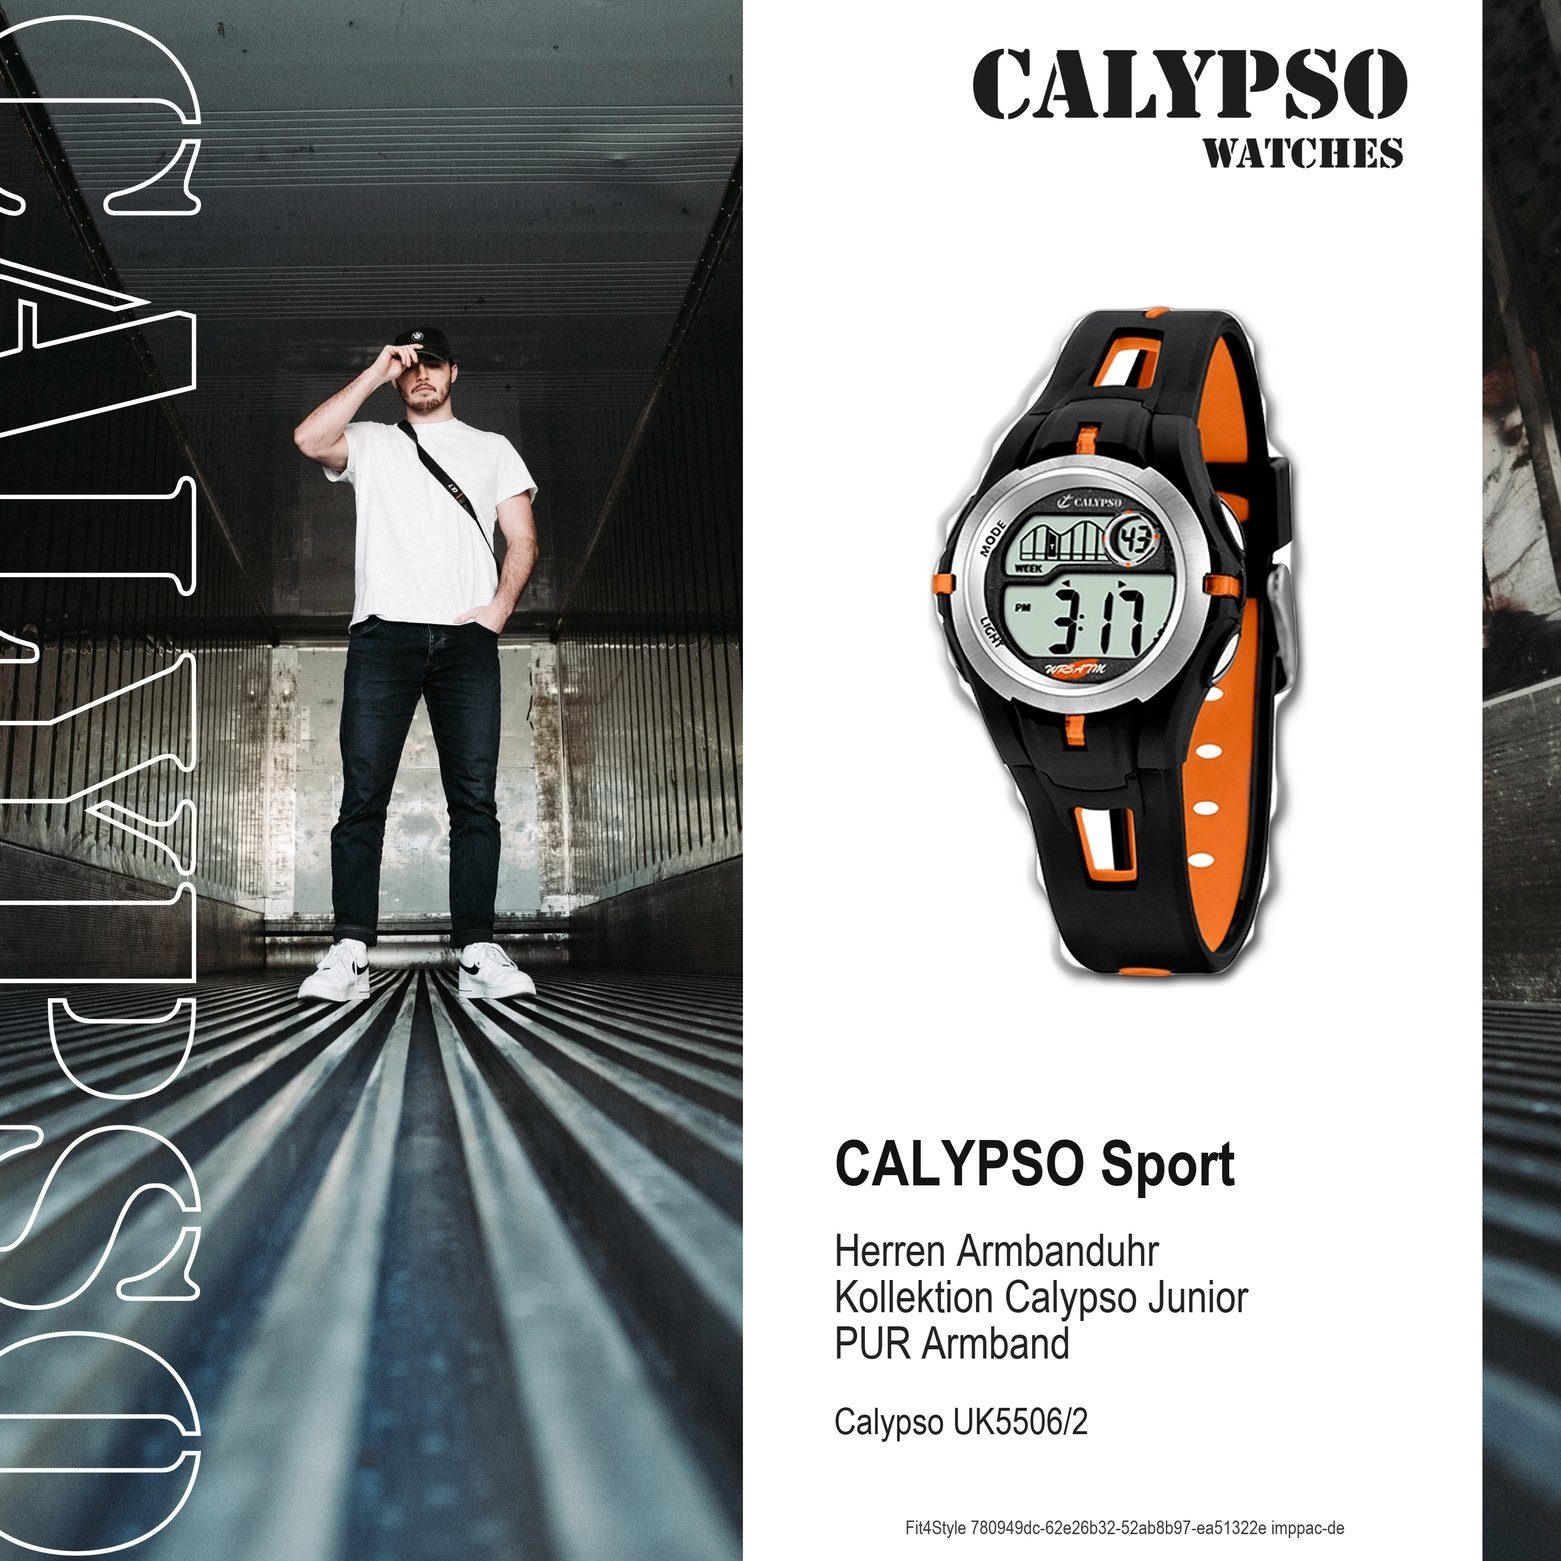 Herren Uhr Armbanduhr K5506/2 rund, Sport CALYPSO Calypso WATCHES Digitaluhr schwarz/orange, Jugend PURarmband Kunststoffband,